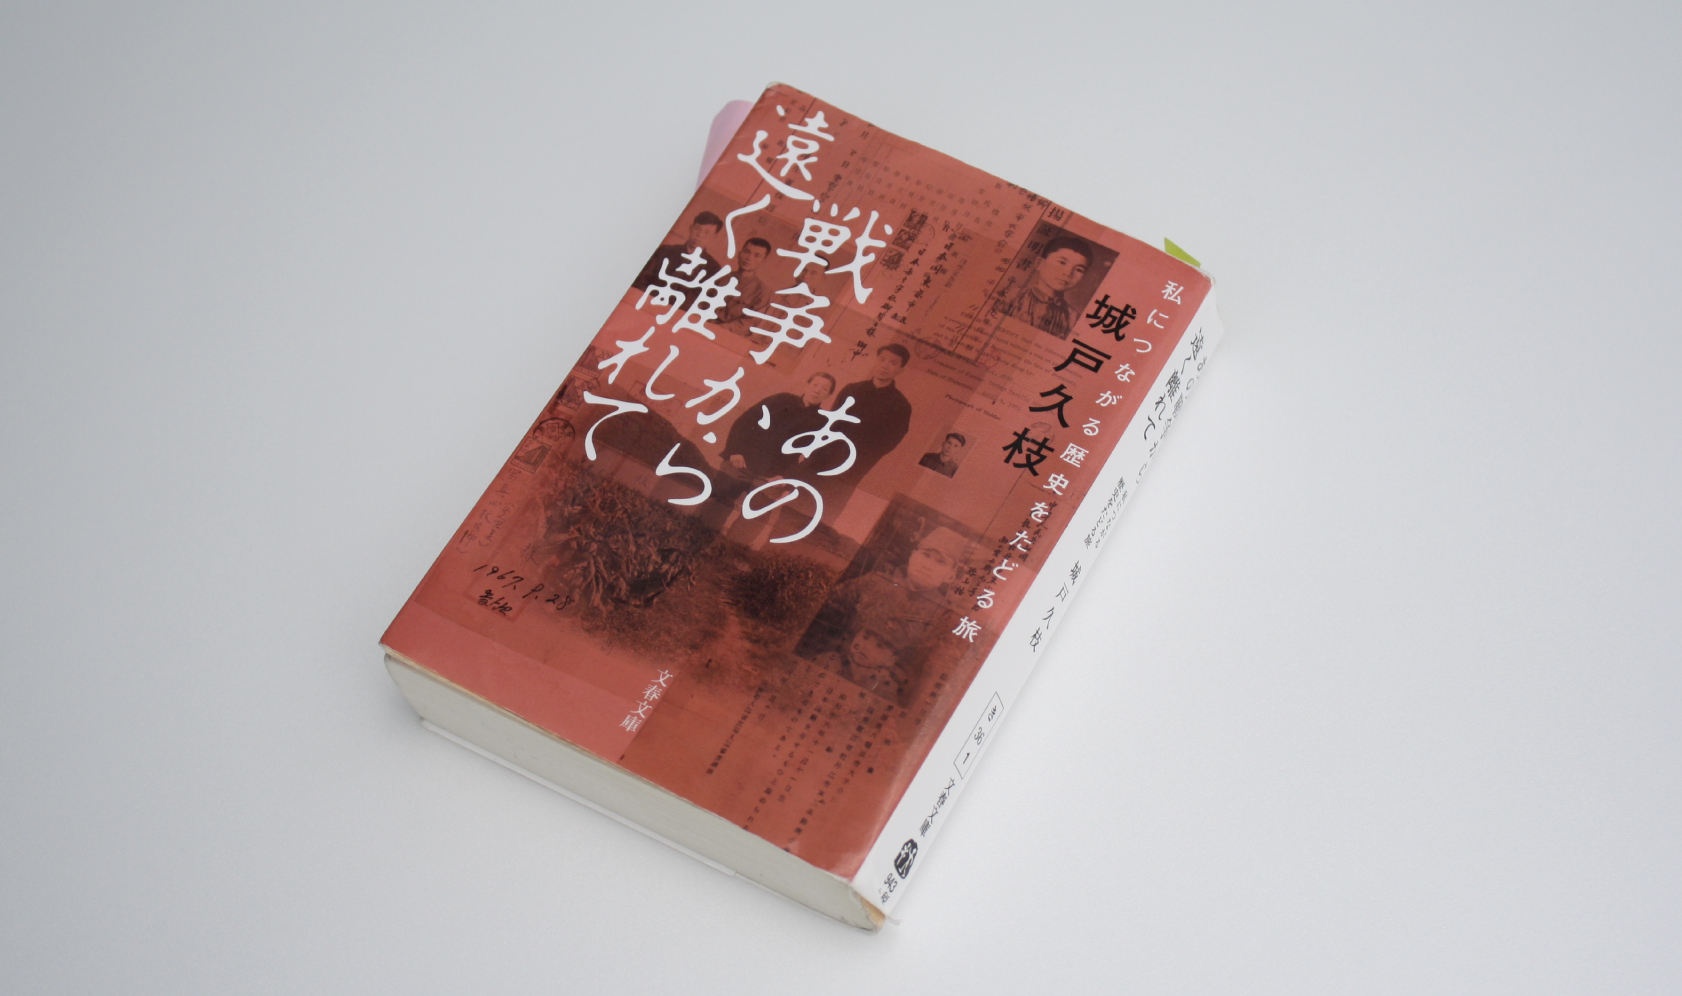 次の世代へ戦争を伝える一冊『じいじが迷子になっちゃった』のできるまで | Kaisei web | 偕成社のウェブマガジン